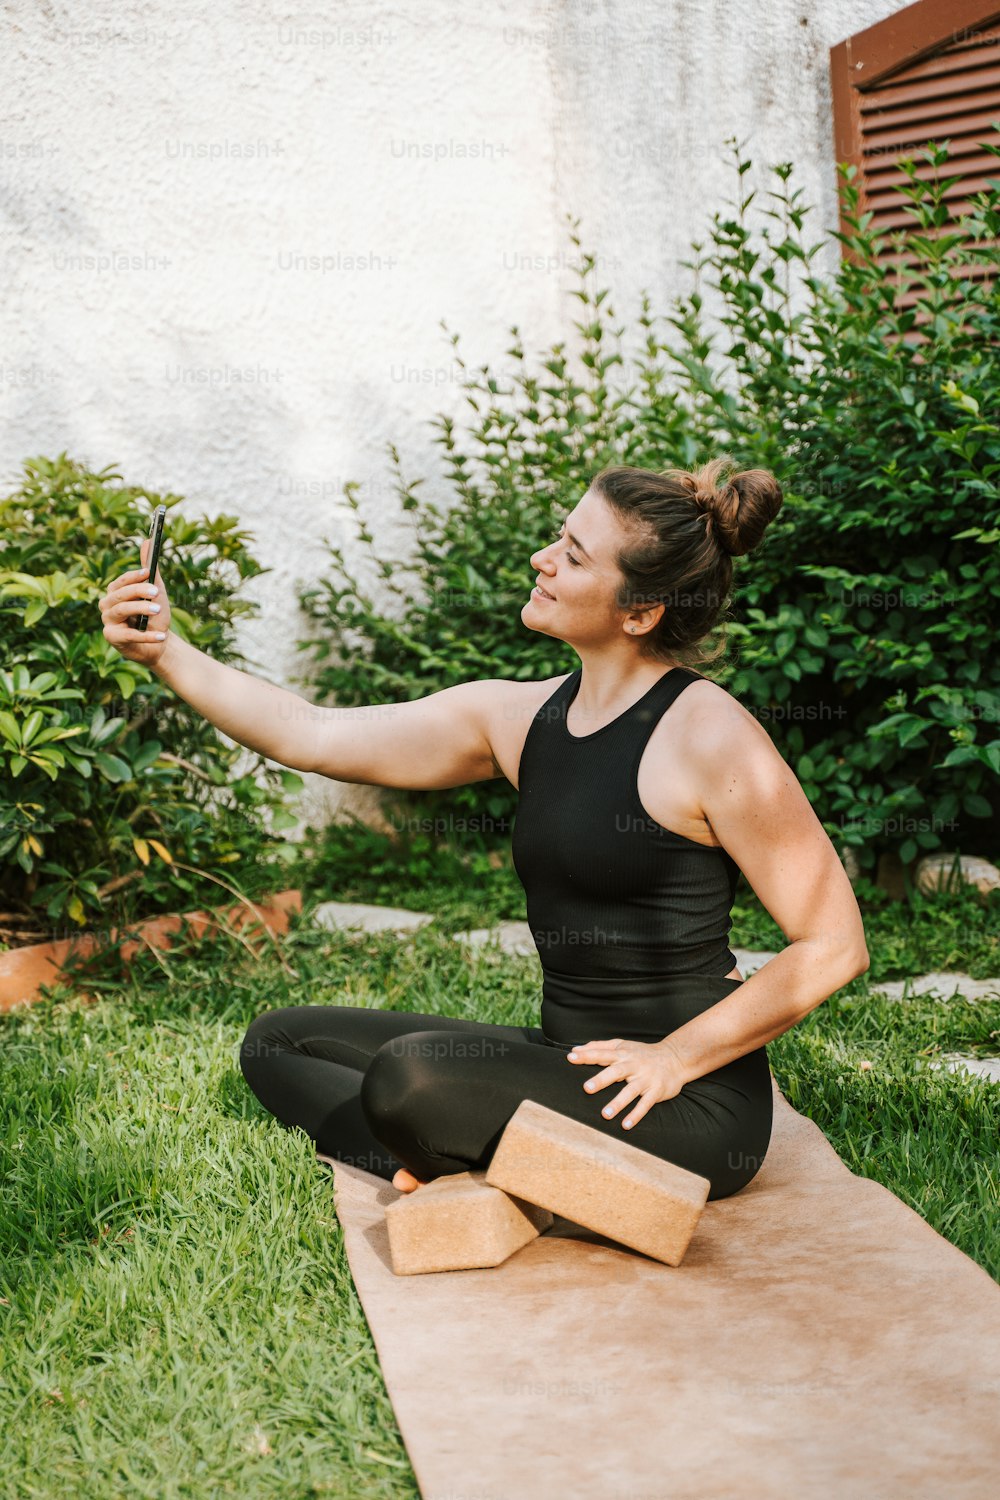 Une femme assise sur un tapis de yoga prenant un selfie